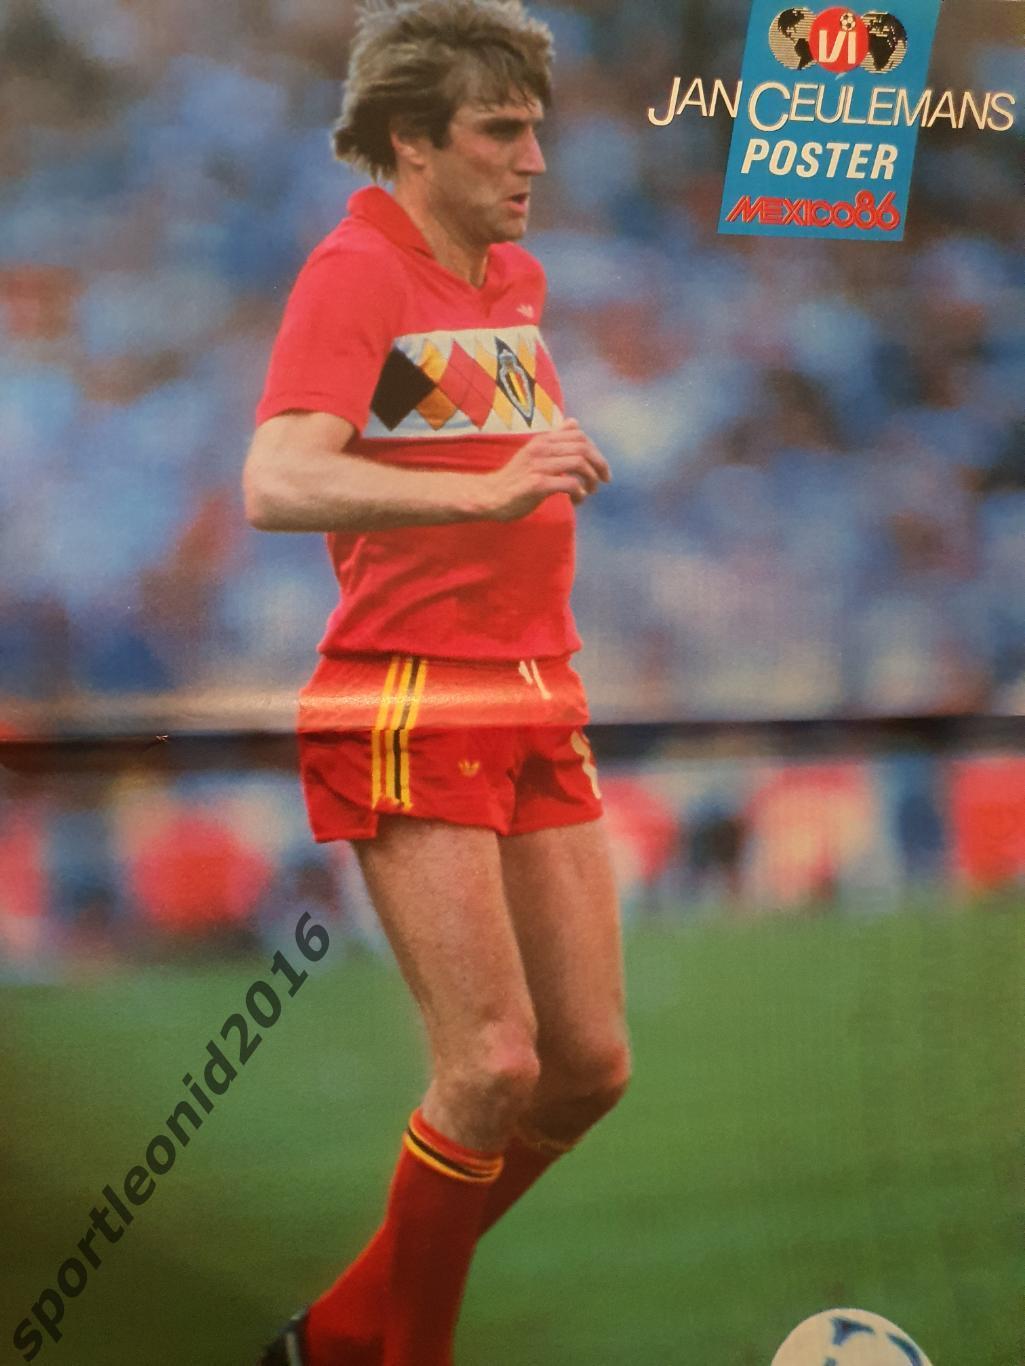 Voetbal International 1986.14 топ выпусков.В том числе итоговые к ЧМ-86.3 3